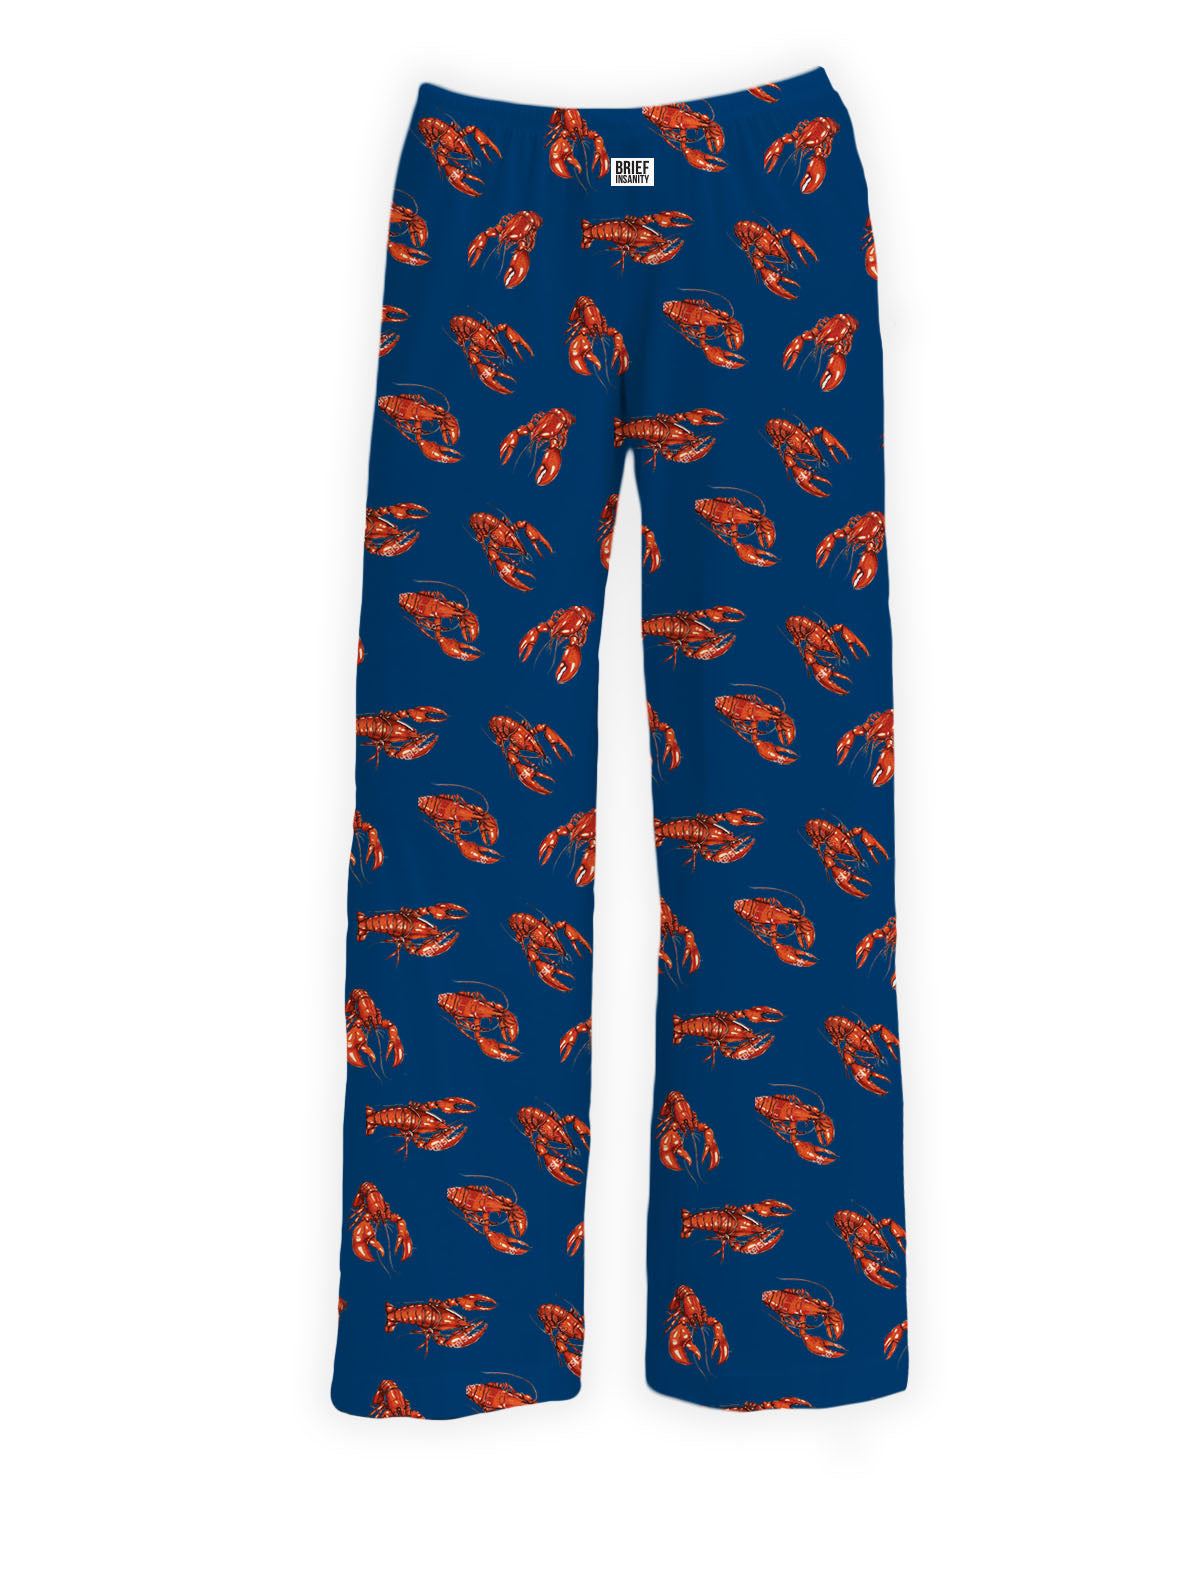 BRIEF INSANITY Dark Blue Lobster Pattern Pajama Pants